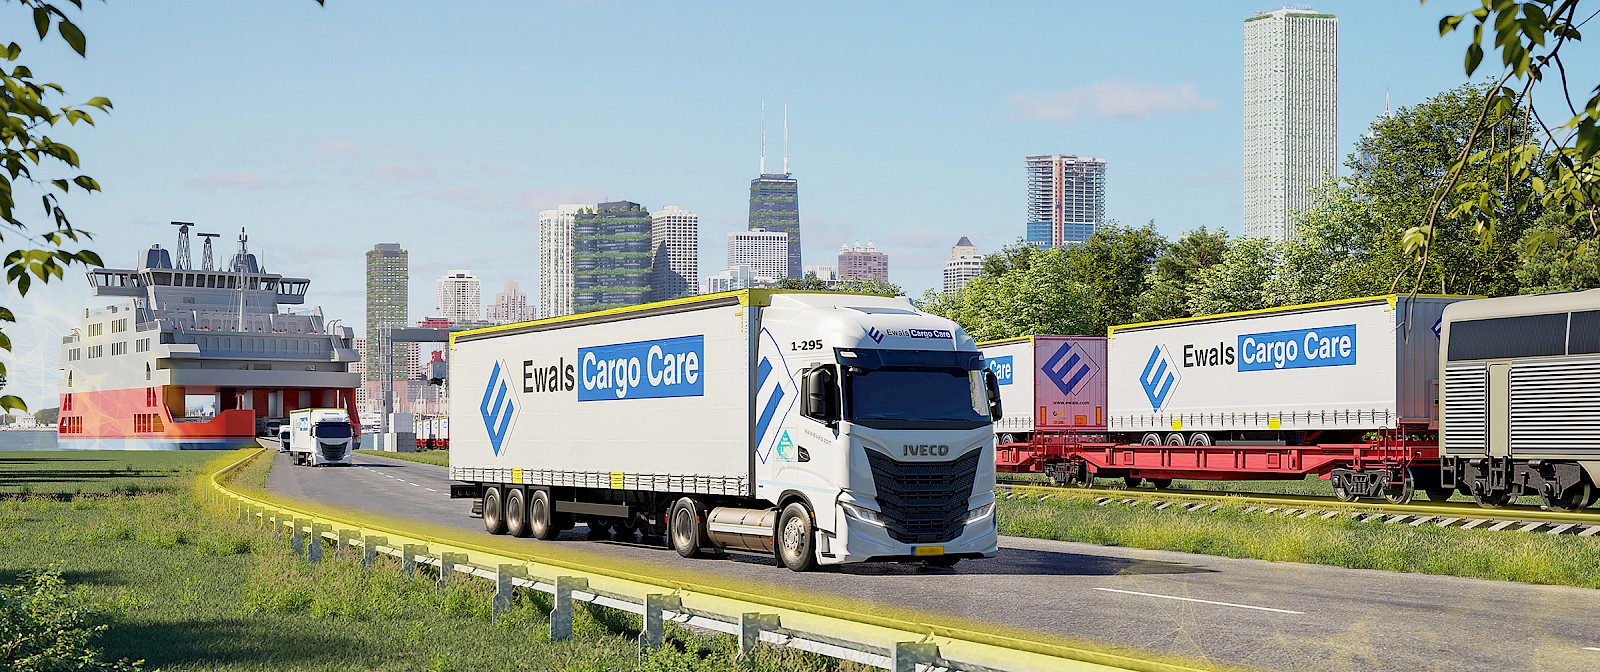 Ewals Cargo Care; Een bedrijf dat letterlijk én figuurlijk in beweging is